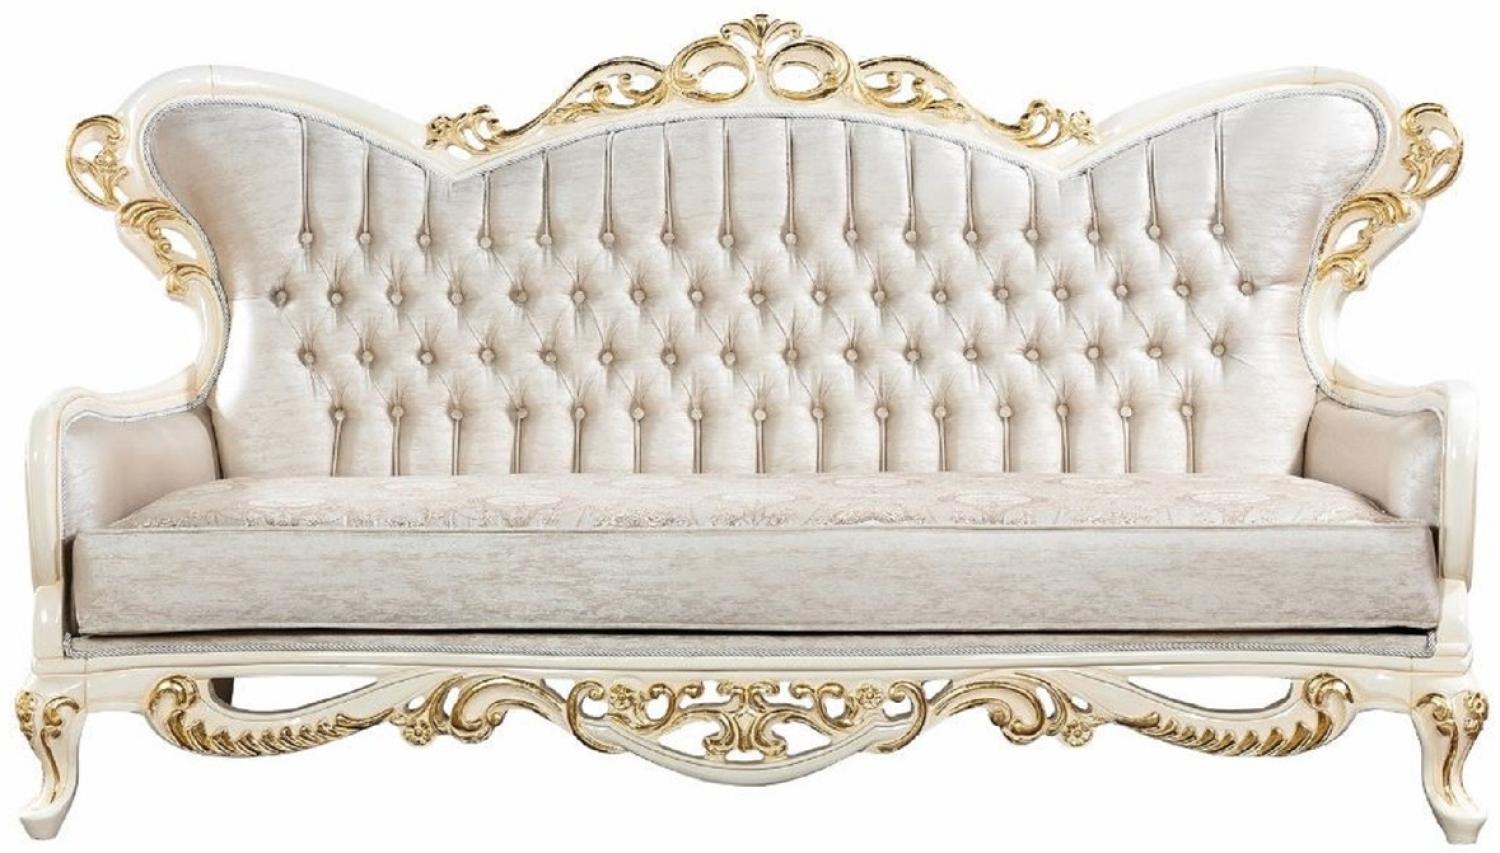 Casa Padrino Luxus Barock Sofa Silber / Weiß / Gold - Handgefertigtes Barockstil Wohnzimmer Sofa mit elegantem Muster - Prunkvolle Barock Wohnzimmer Möbel Bild 1